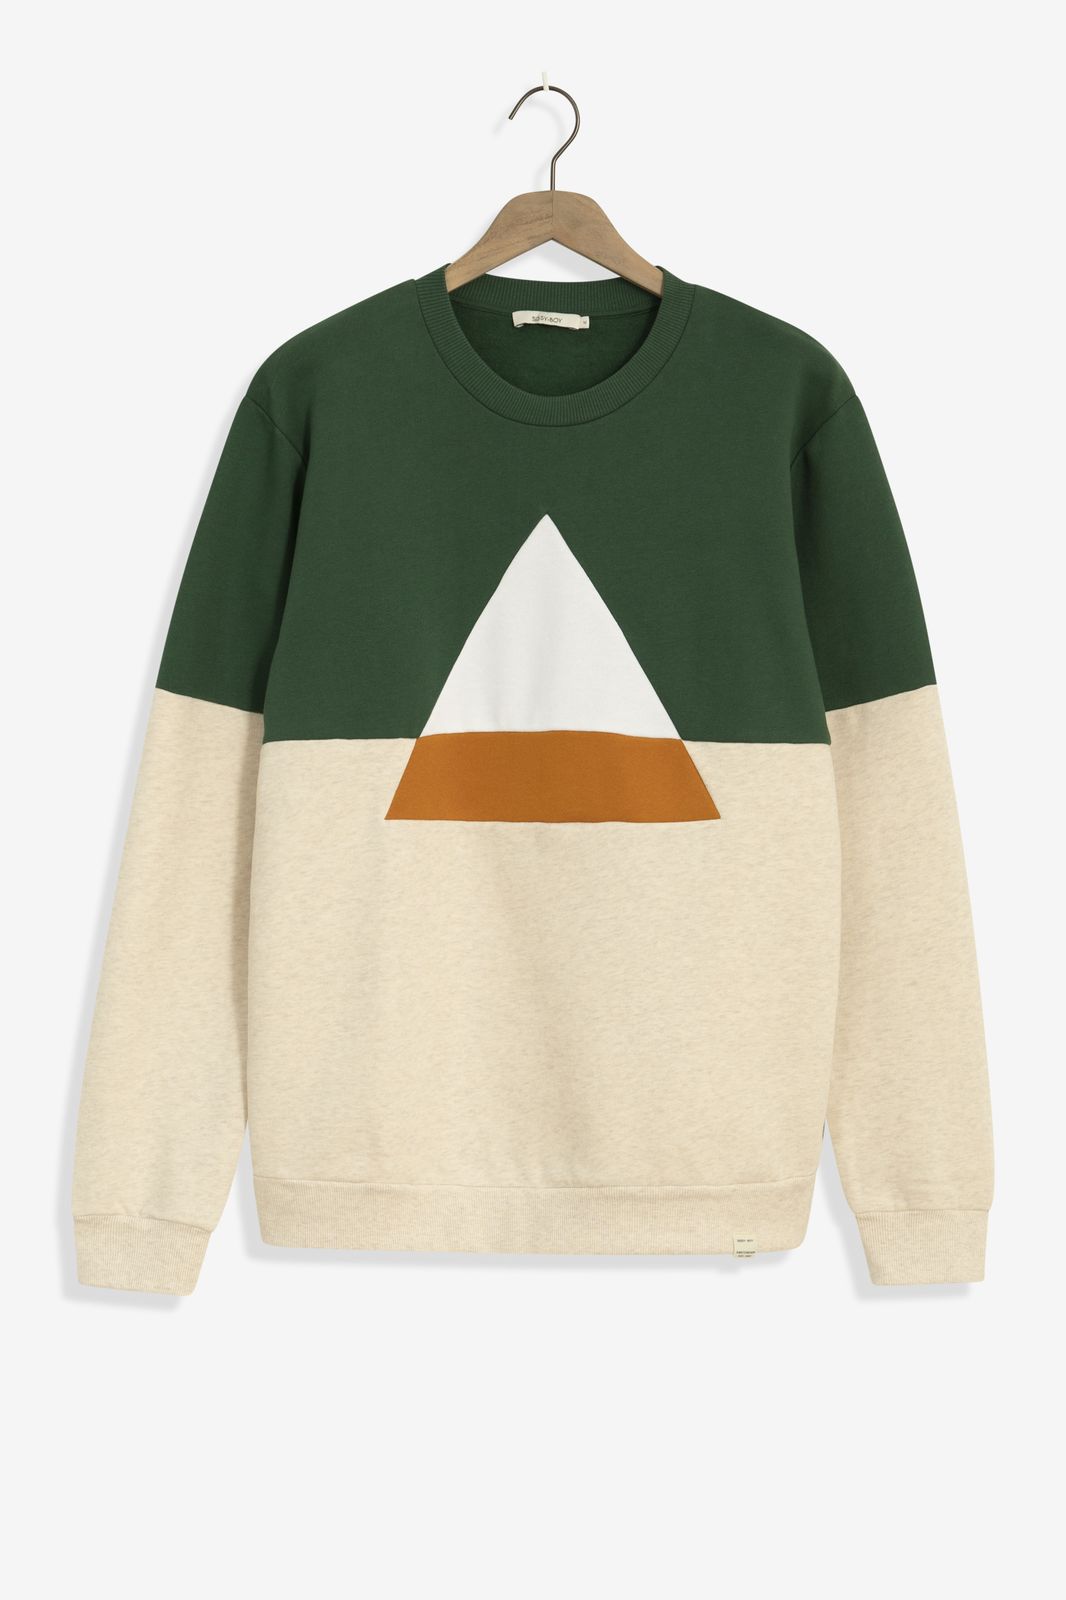 Baumwoll-Sweater mit Colorblocking-Design - grün